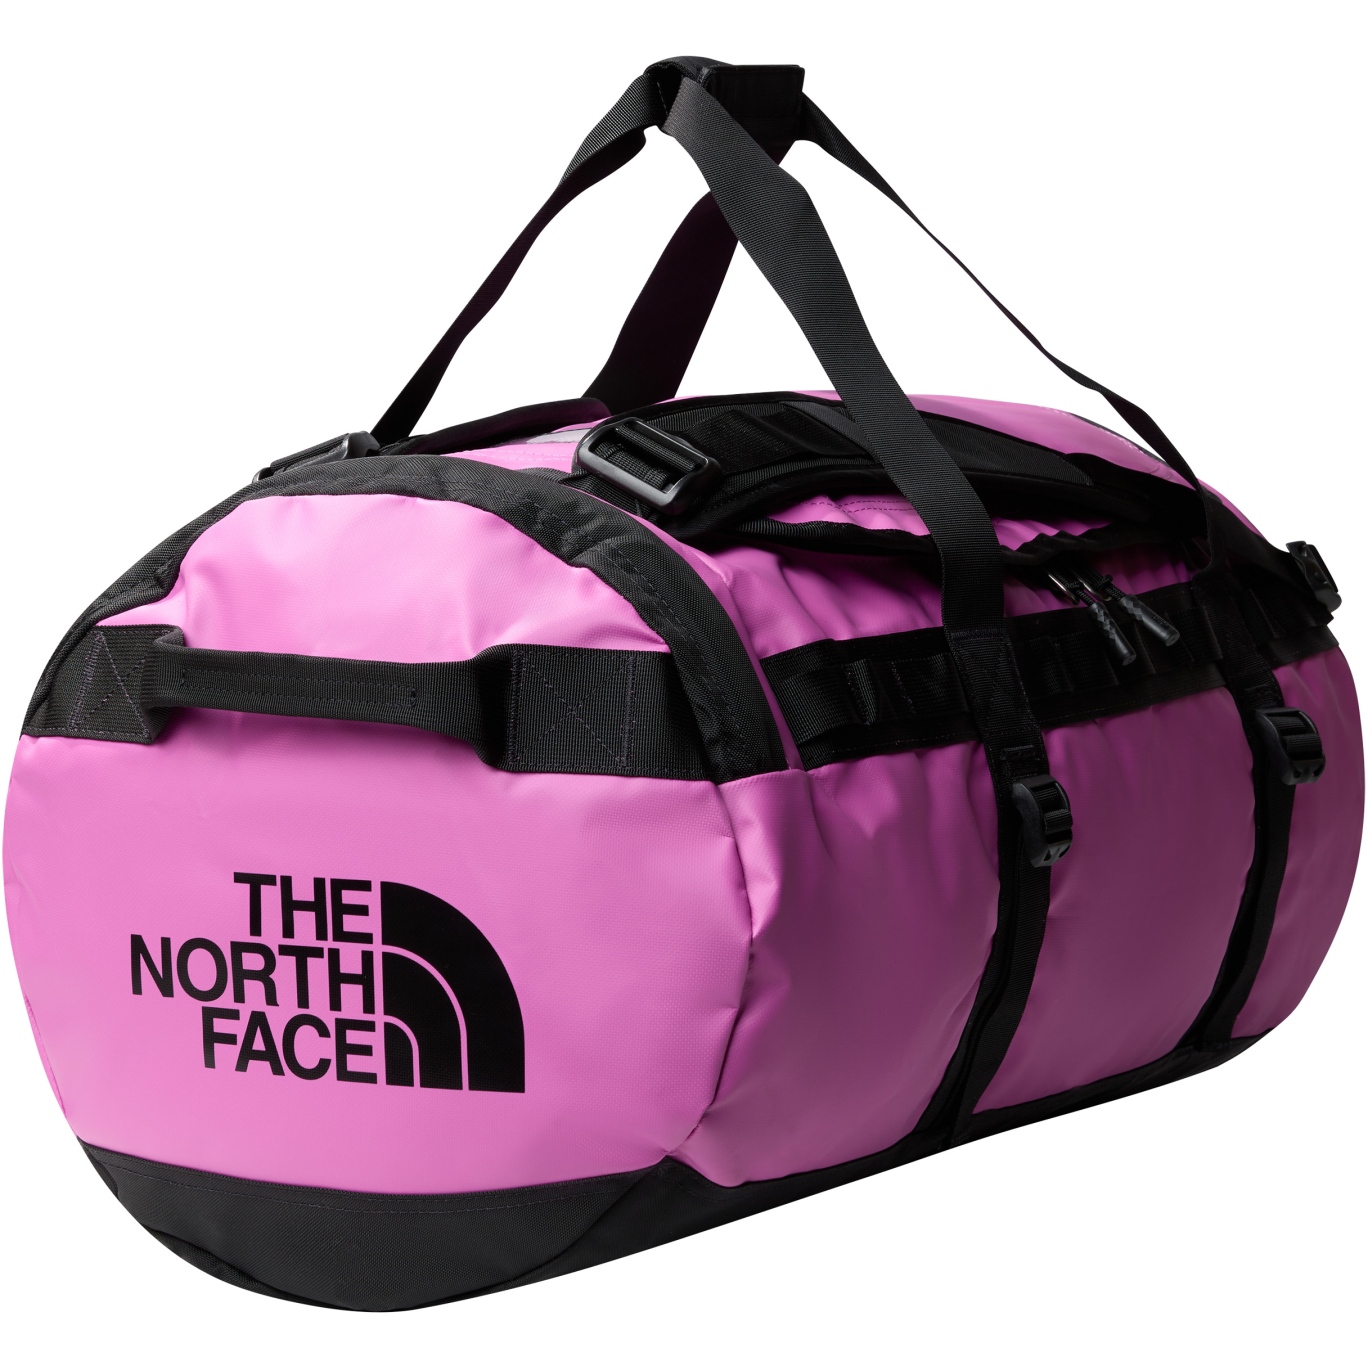 Produktbild von The North Face Base Camp Duffel Reisetasche - Medium - Wisteria Purple/TNF Black